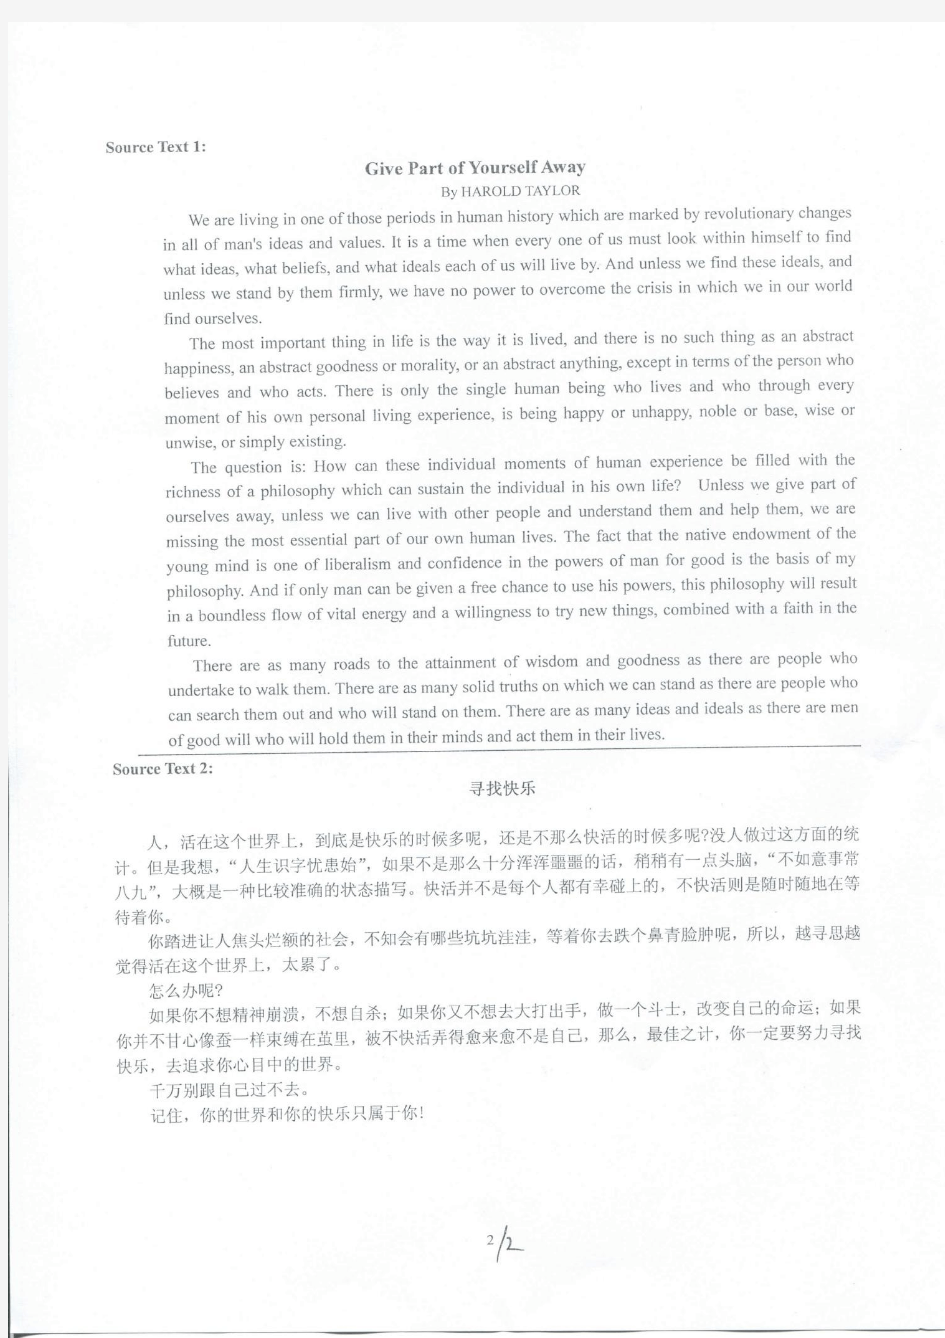 上海海事大学-2012年攻读硕士学位研究生入学考试试题-汉语写作与百科知识